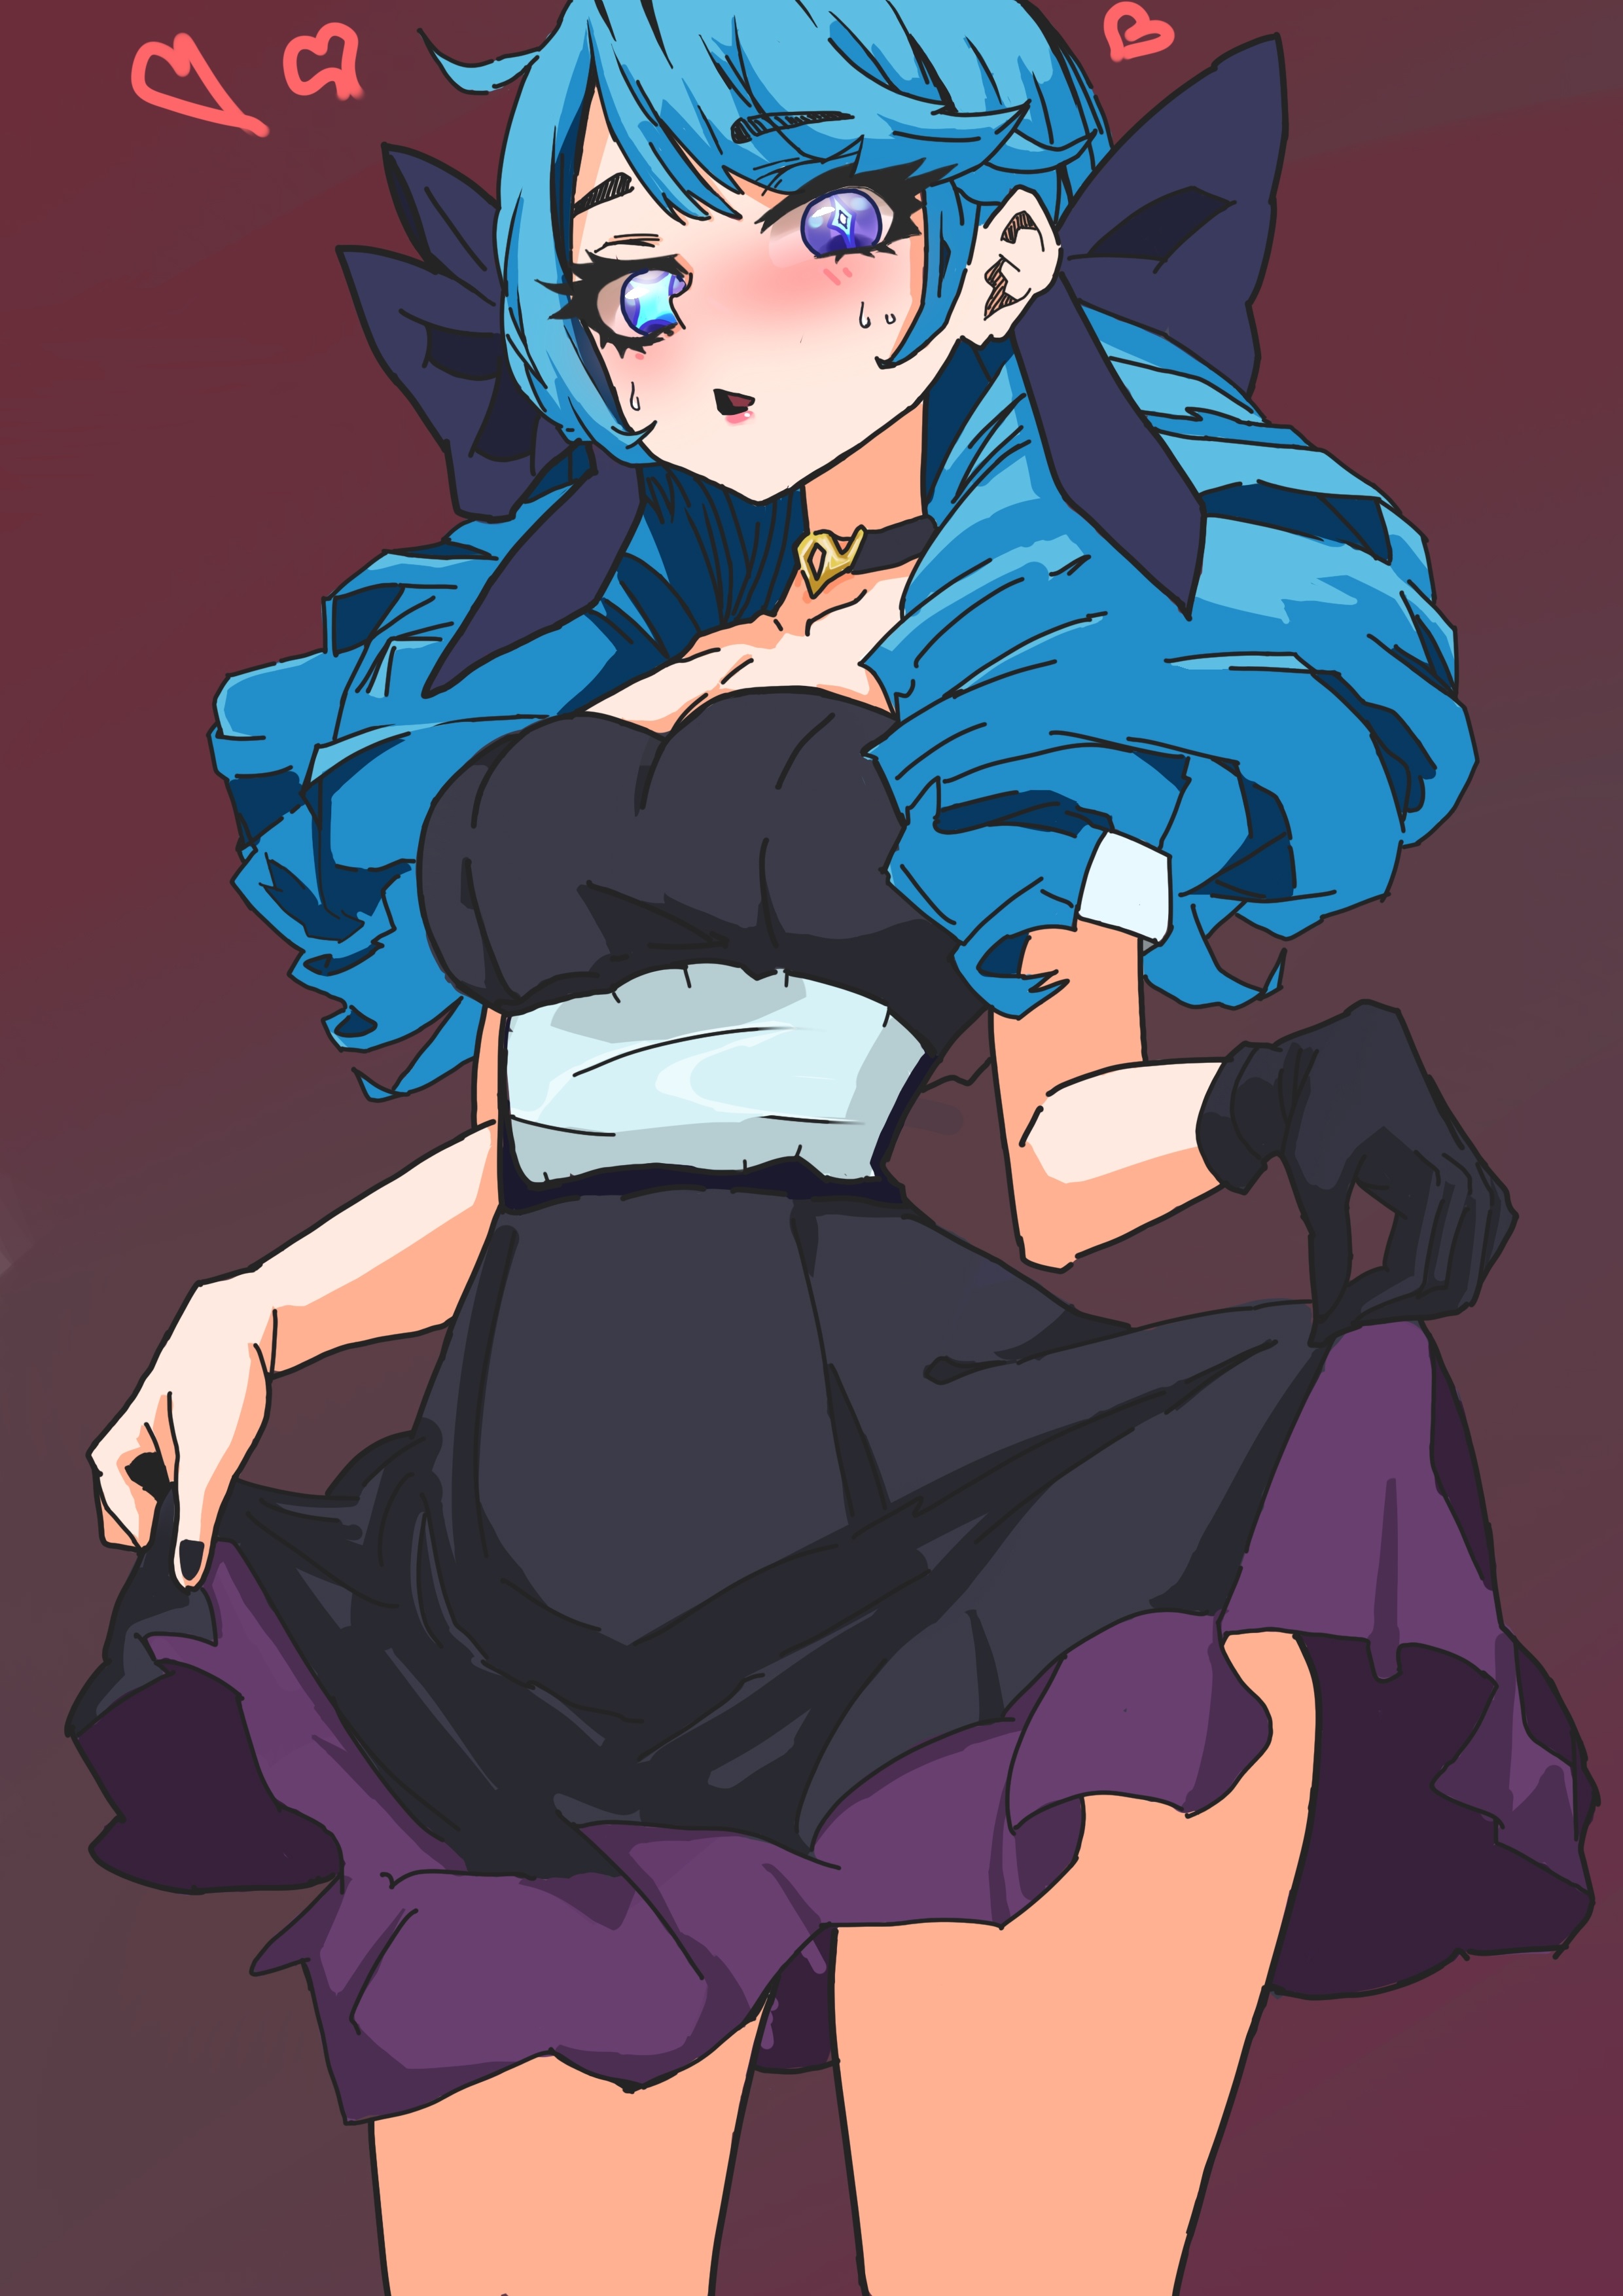 Anime 2480x3508 Gwen (League of Legends) League of Legends blue hair lifting skirt portrait display dress heterochromia gloves choker heart standing looking at viewer long hair blushing sweatdrop